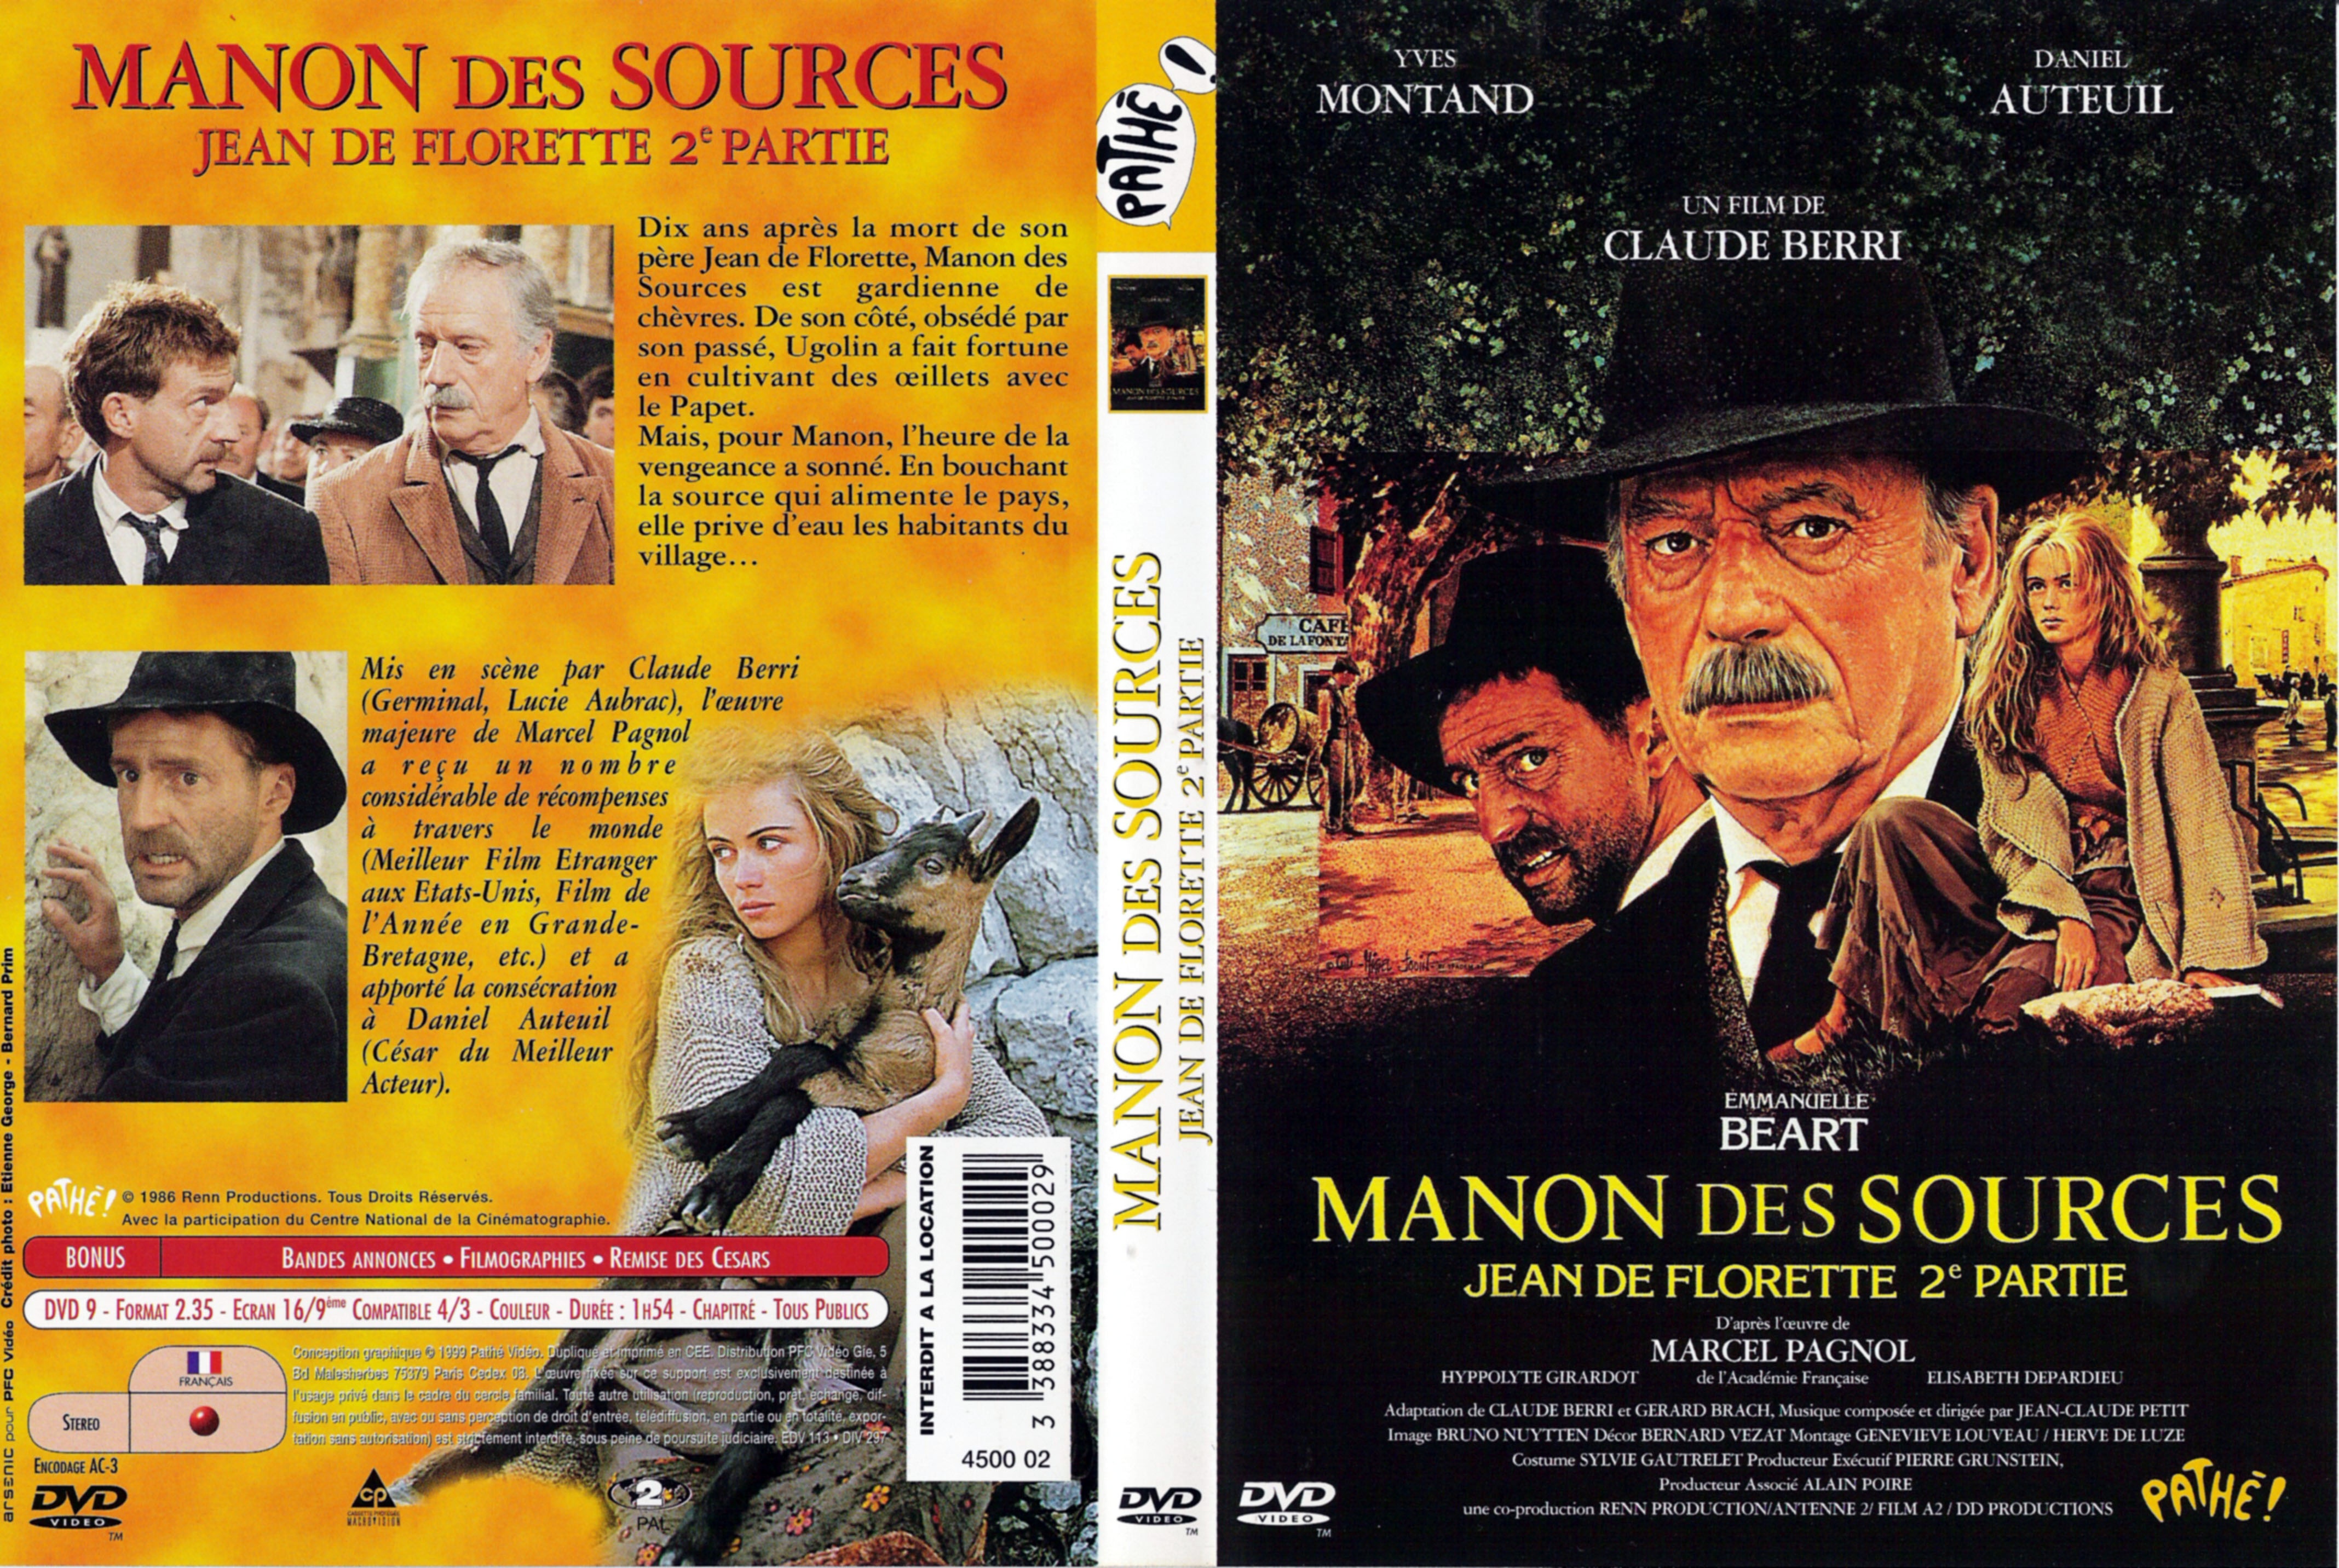 Jaquette DVD Manon des sources